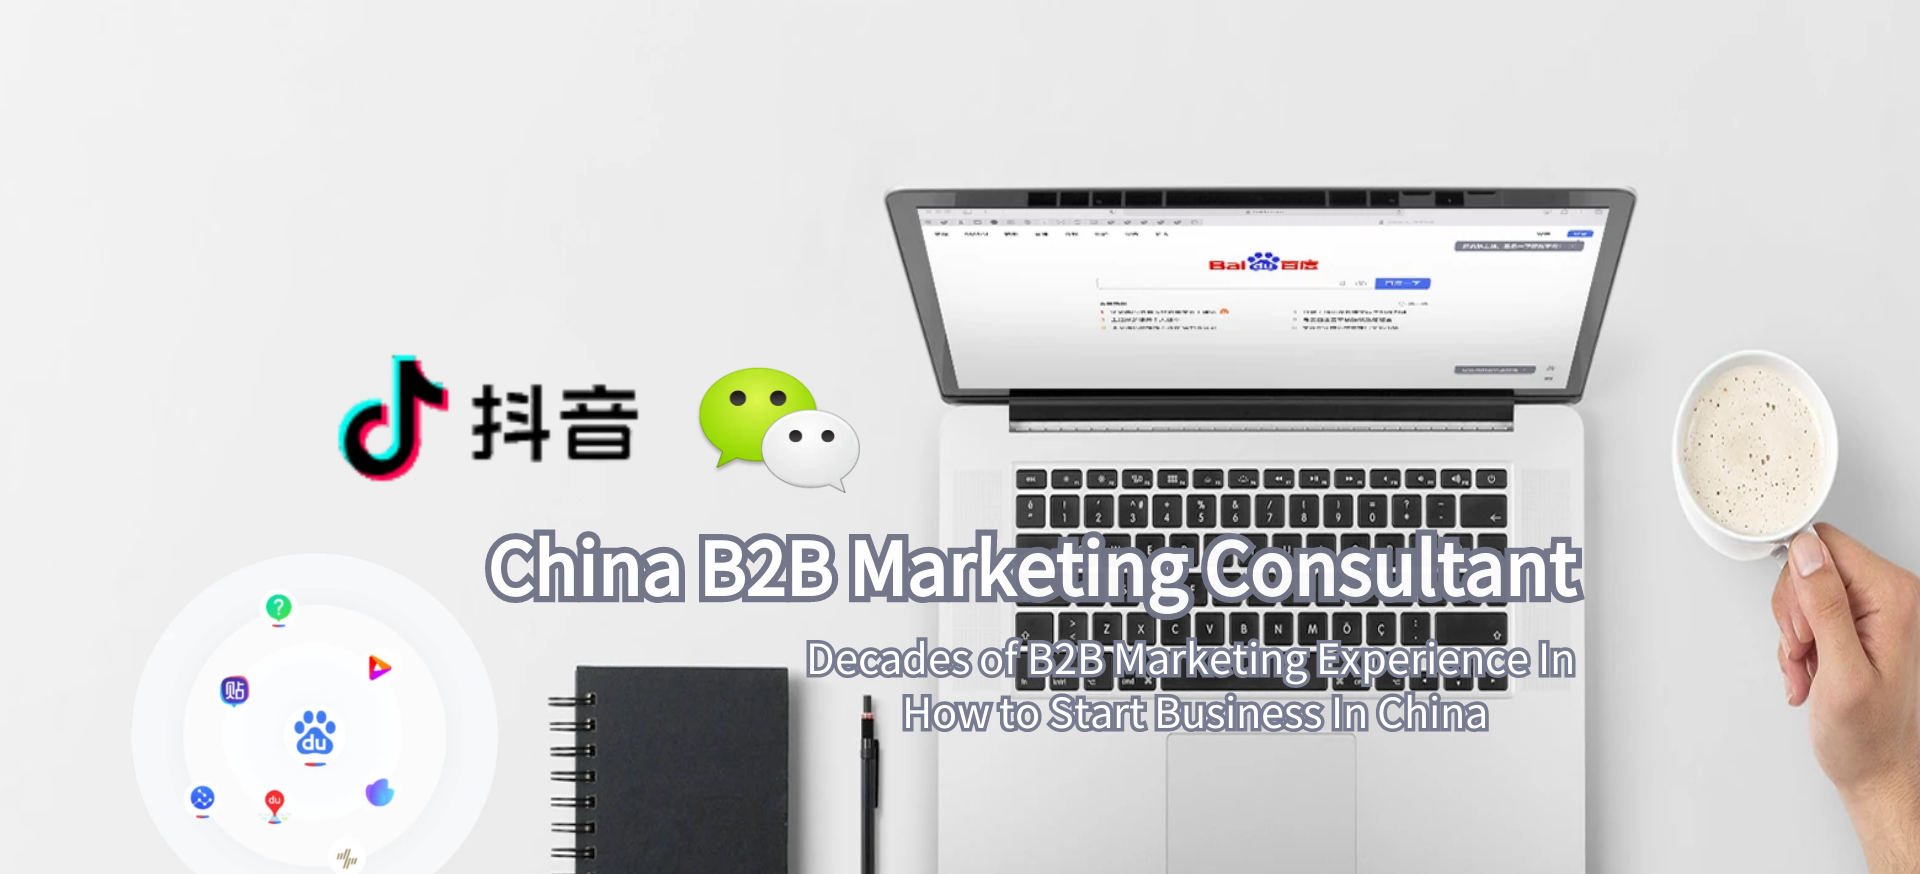 China B2B Marketing consultant 